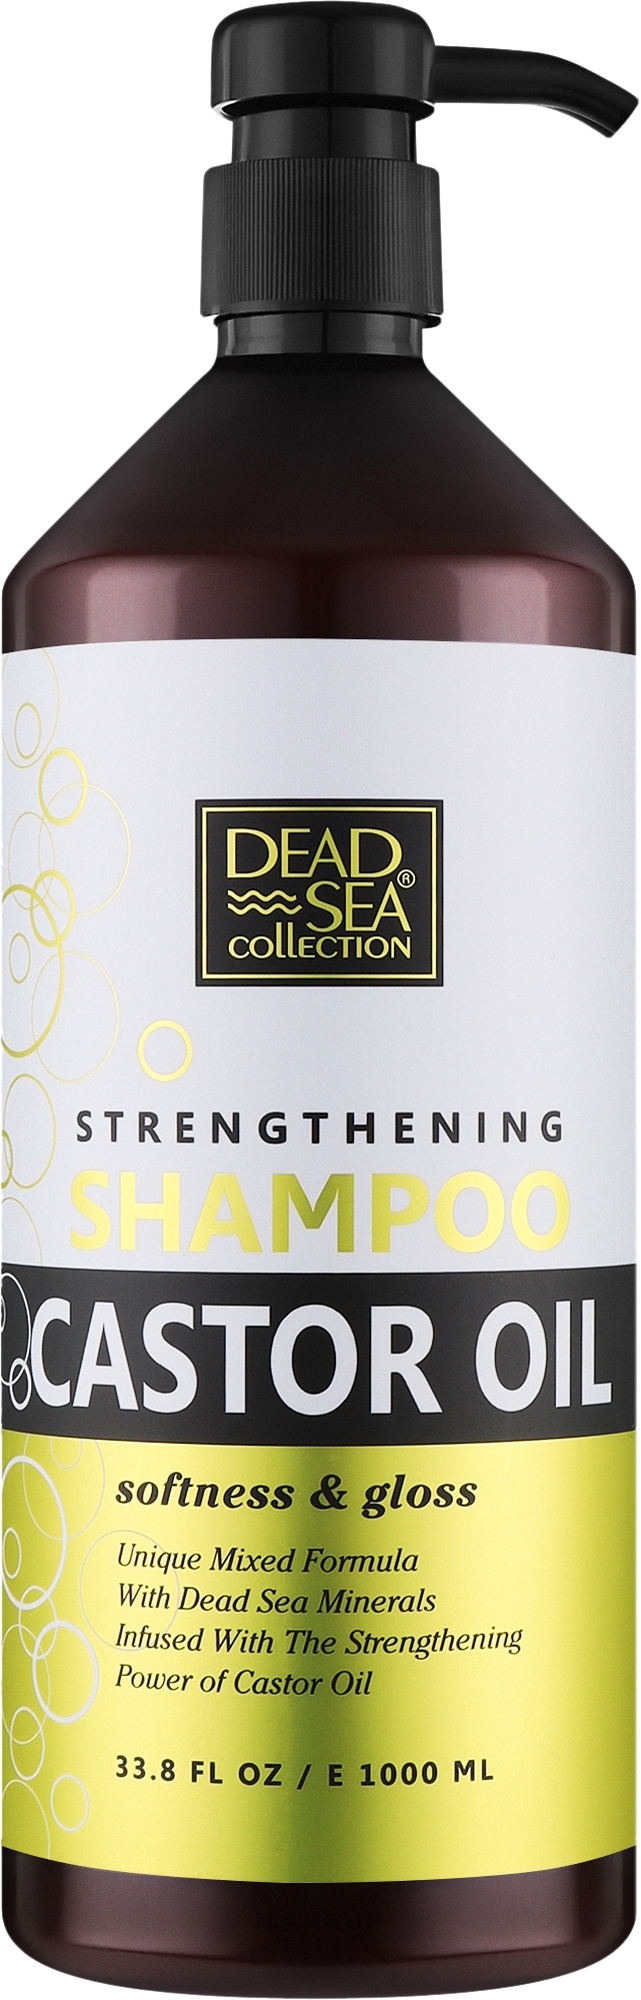 Шампунь для волос с касторовым маслом и минералами Мертвого моря - Dead Sea Collection Shampoo With Castor Oil — фото 1000ml